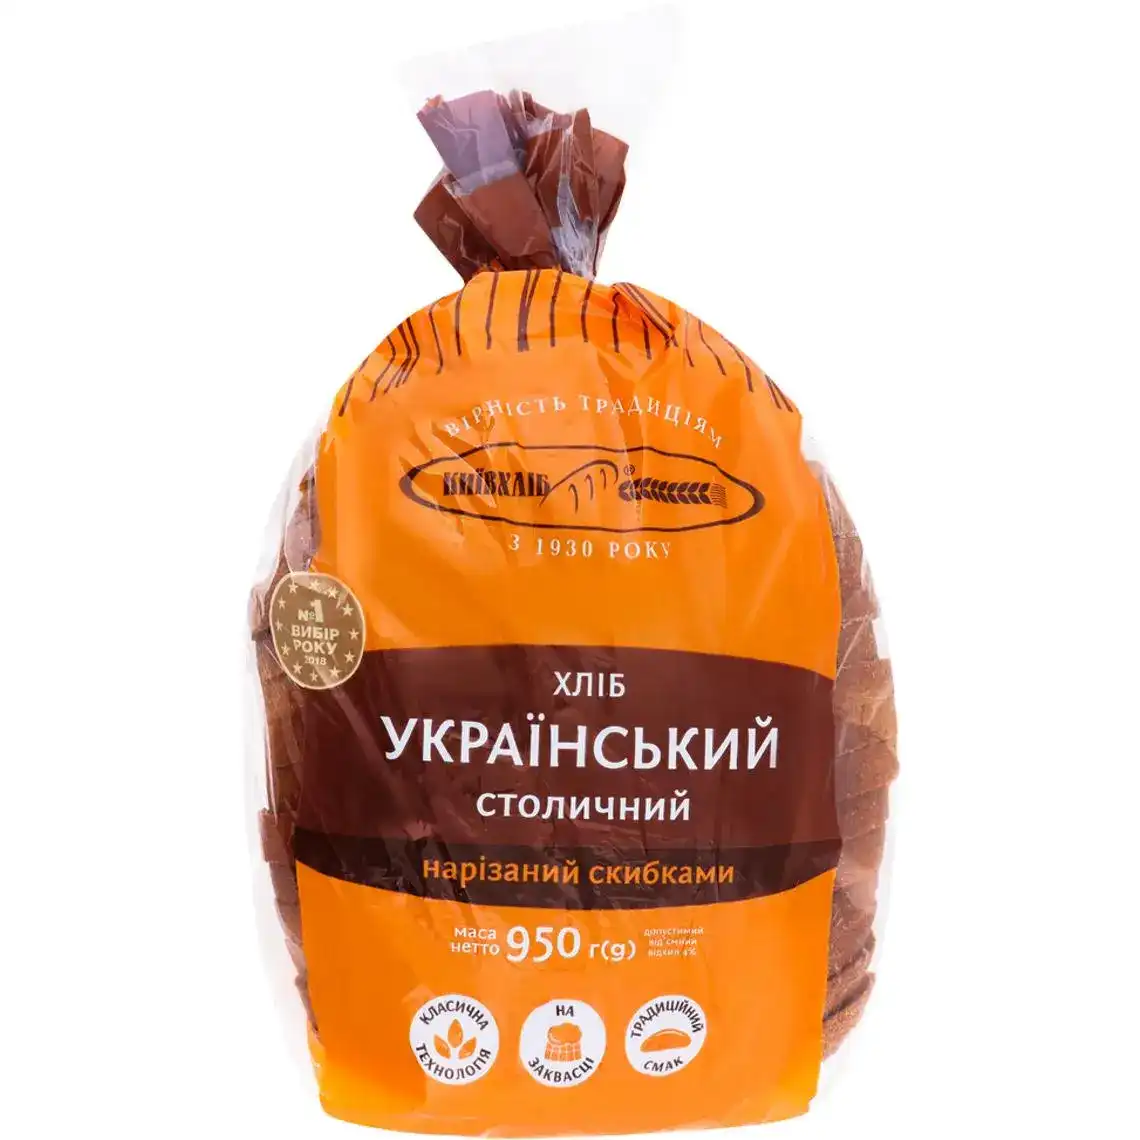 Хліб Київхліб Український столичний житньо-пшеничний нарізний 950 г